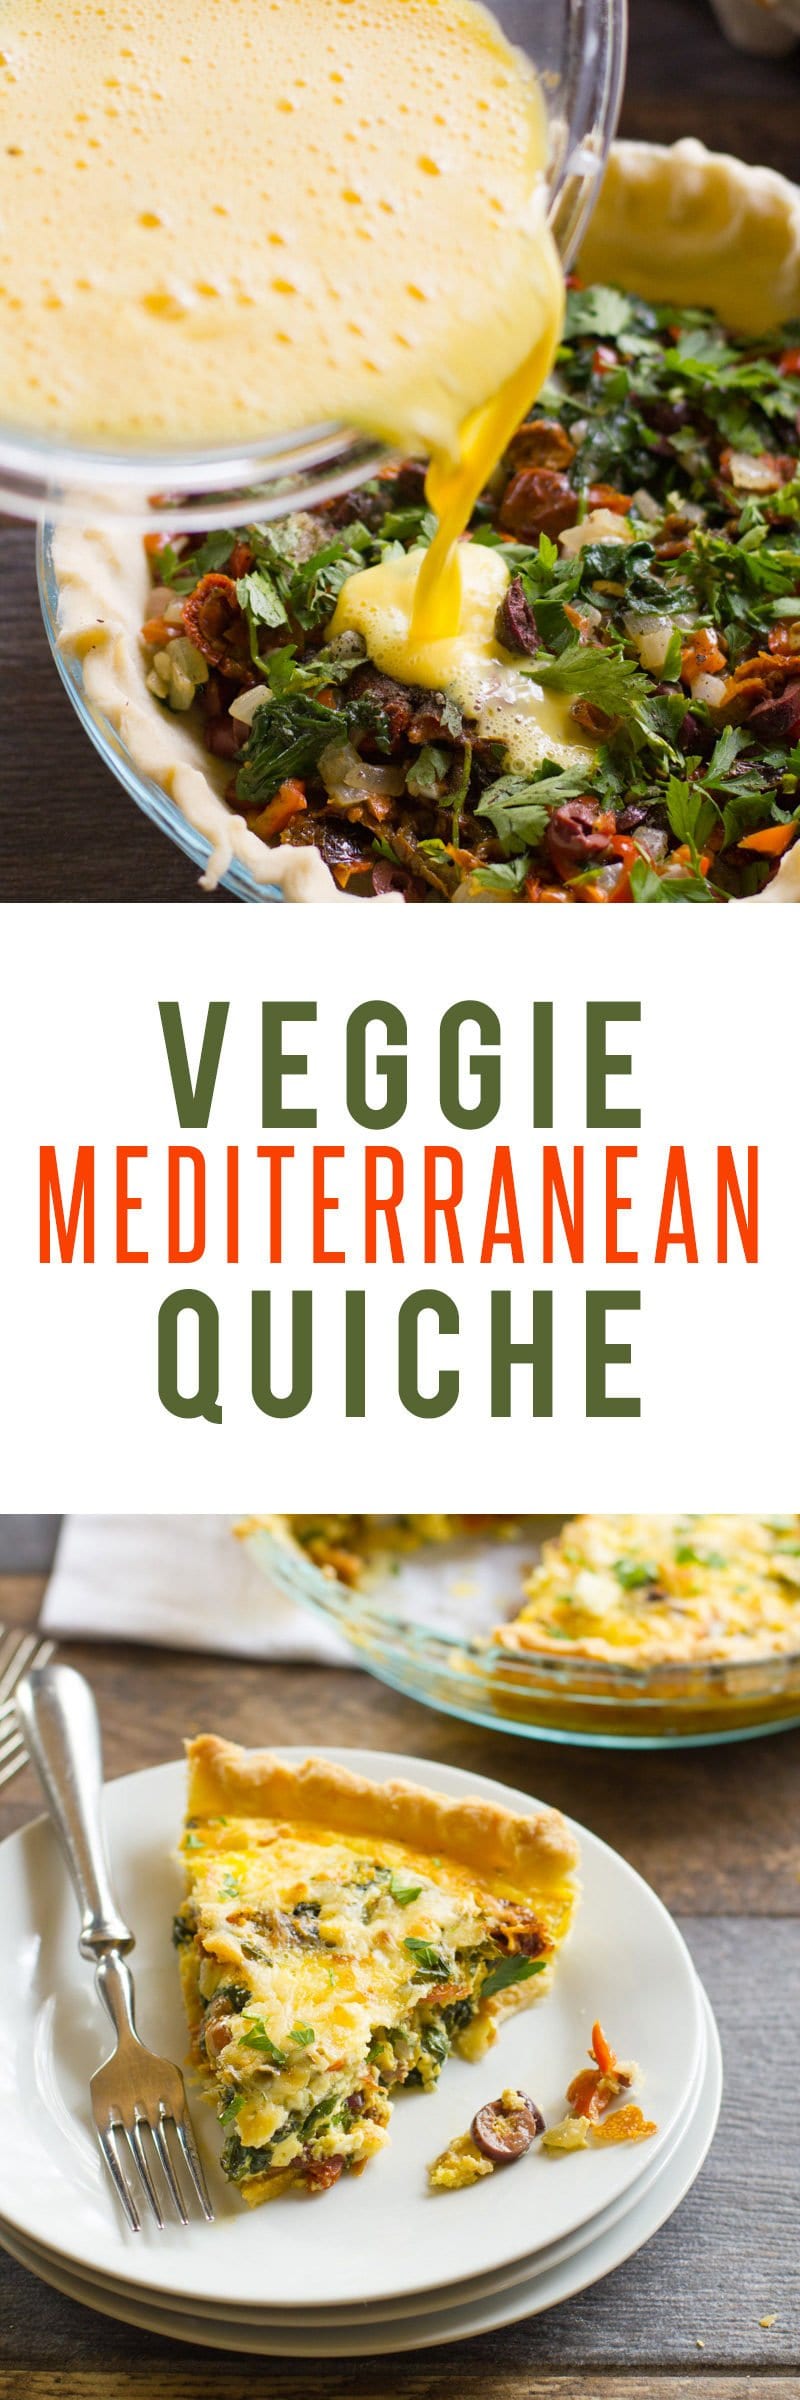 Veggie Mediterranean Quiche